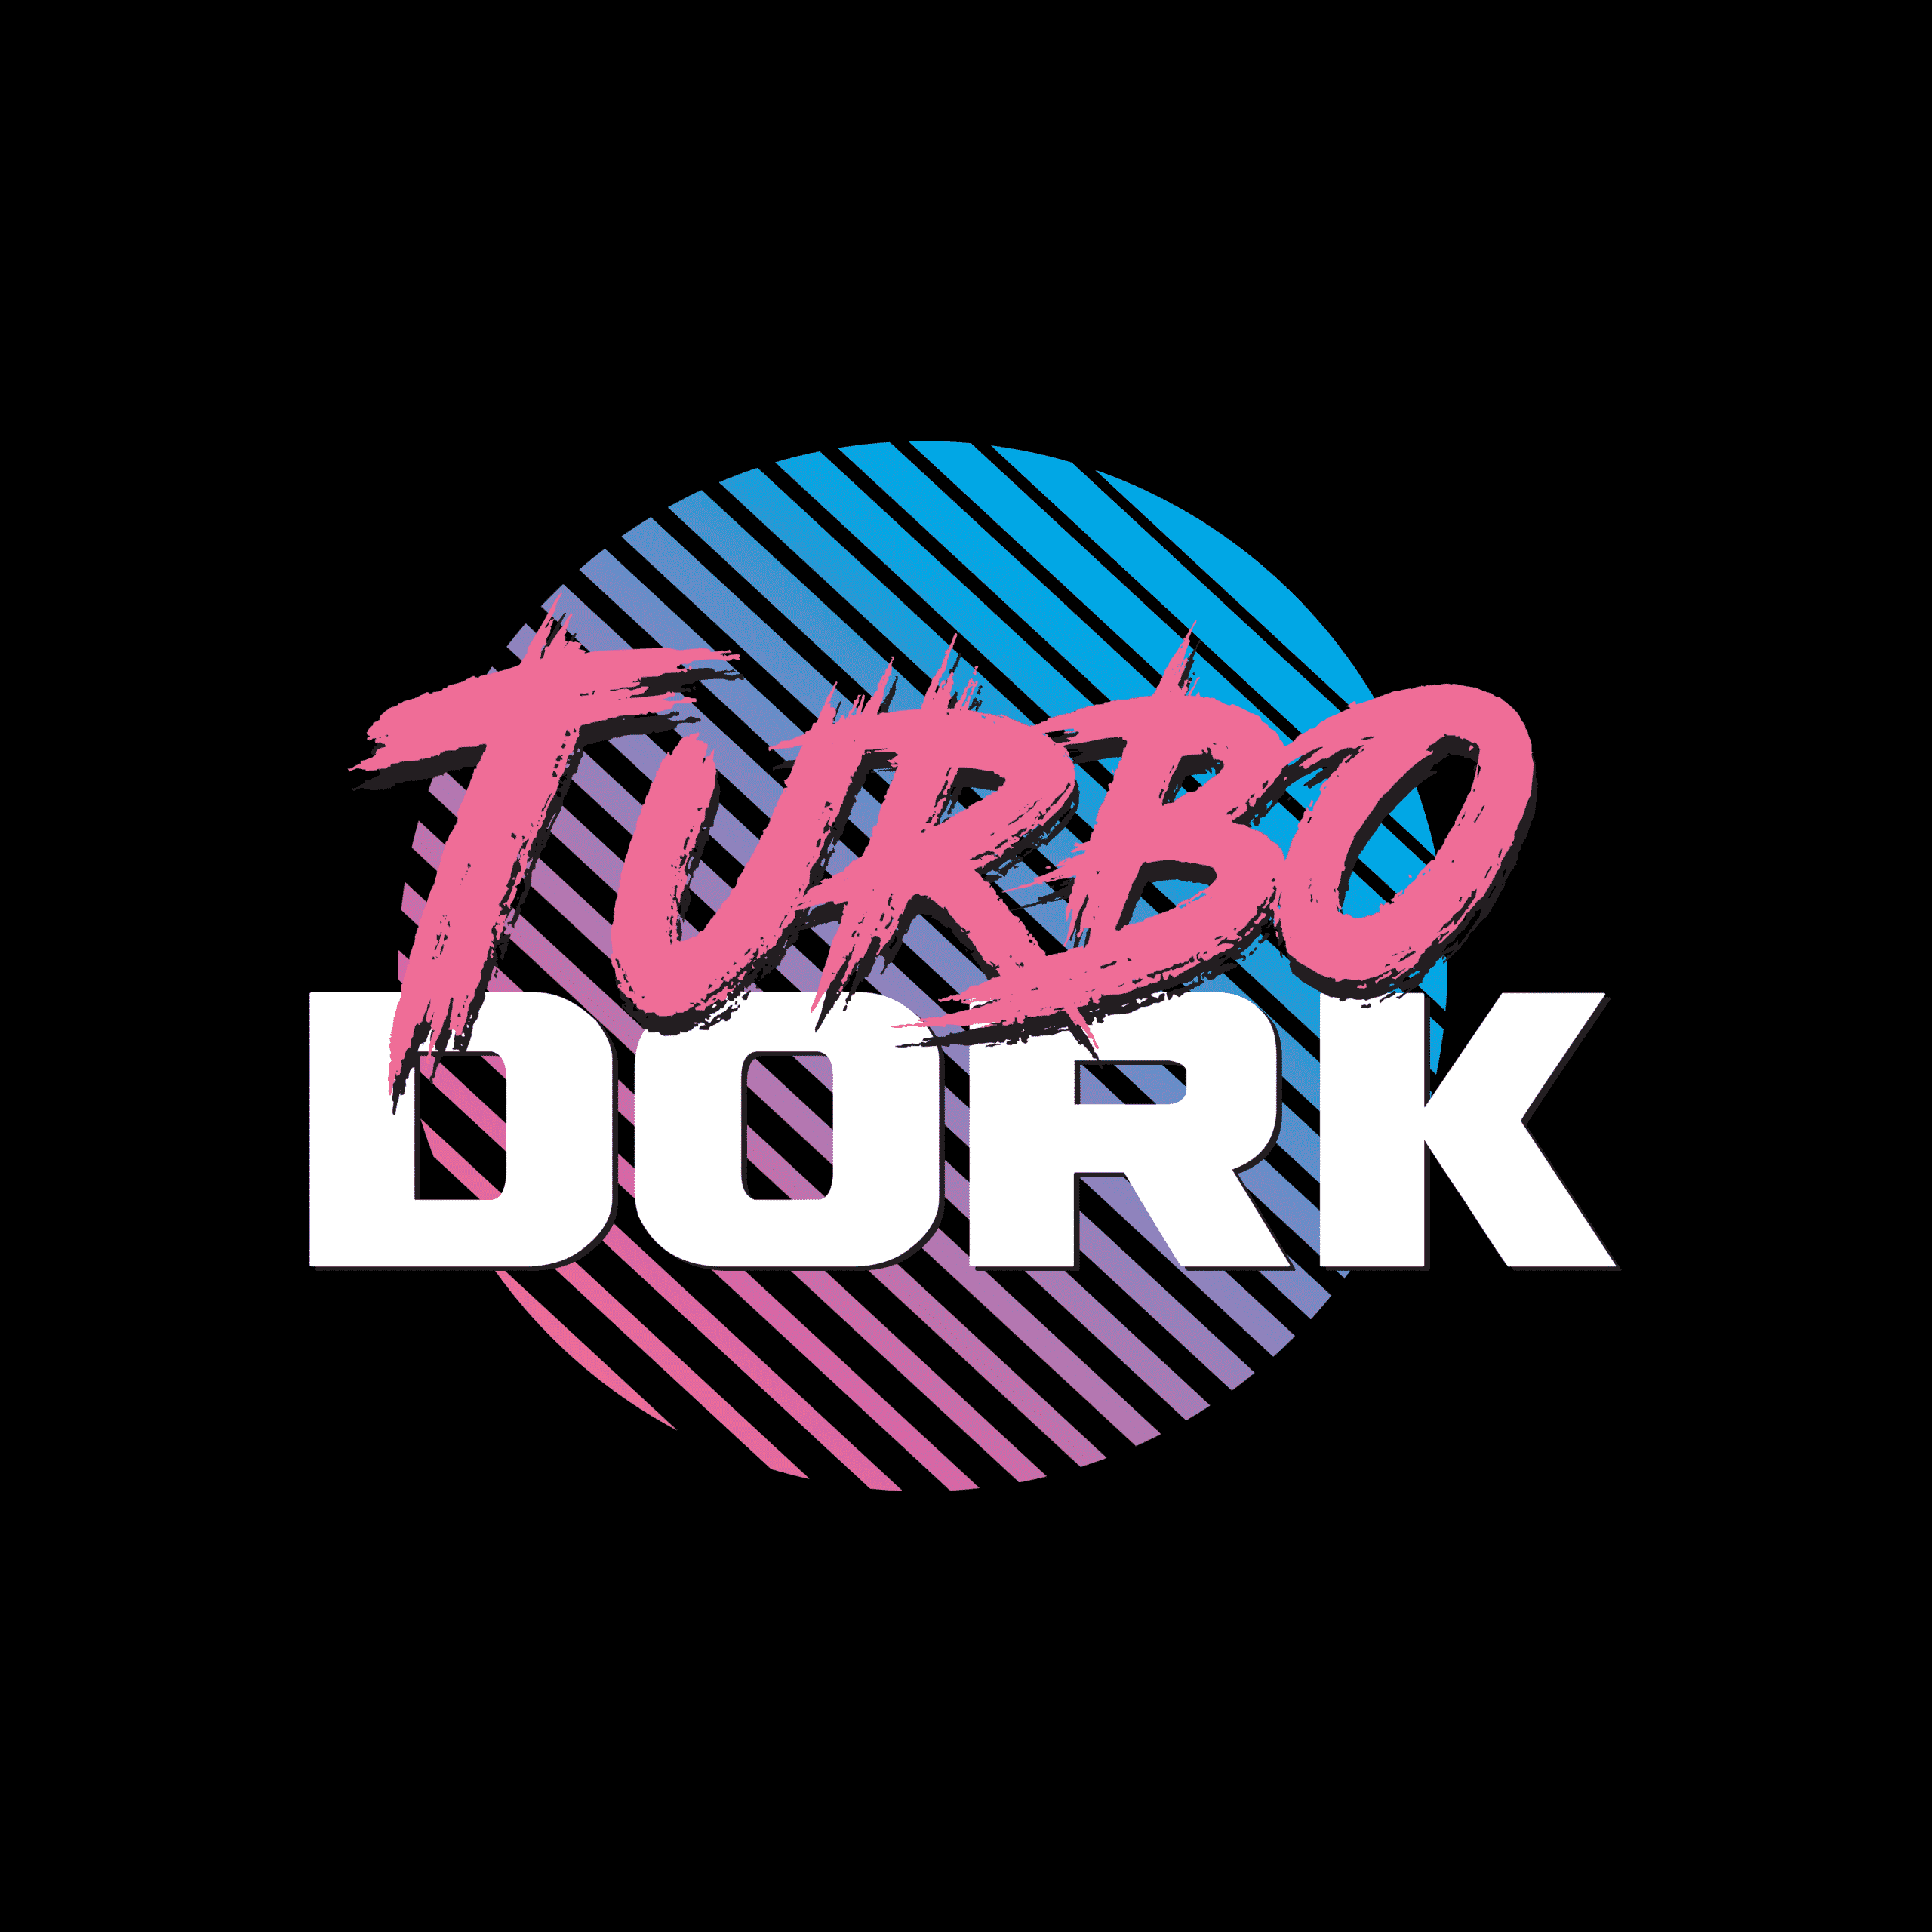 Turbo Dork Paint